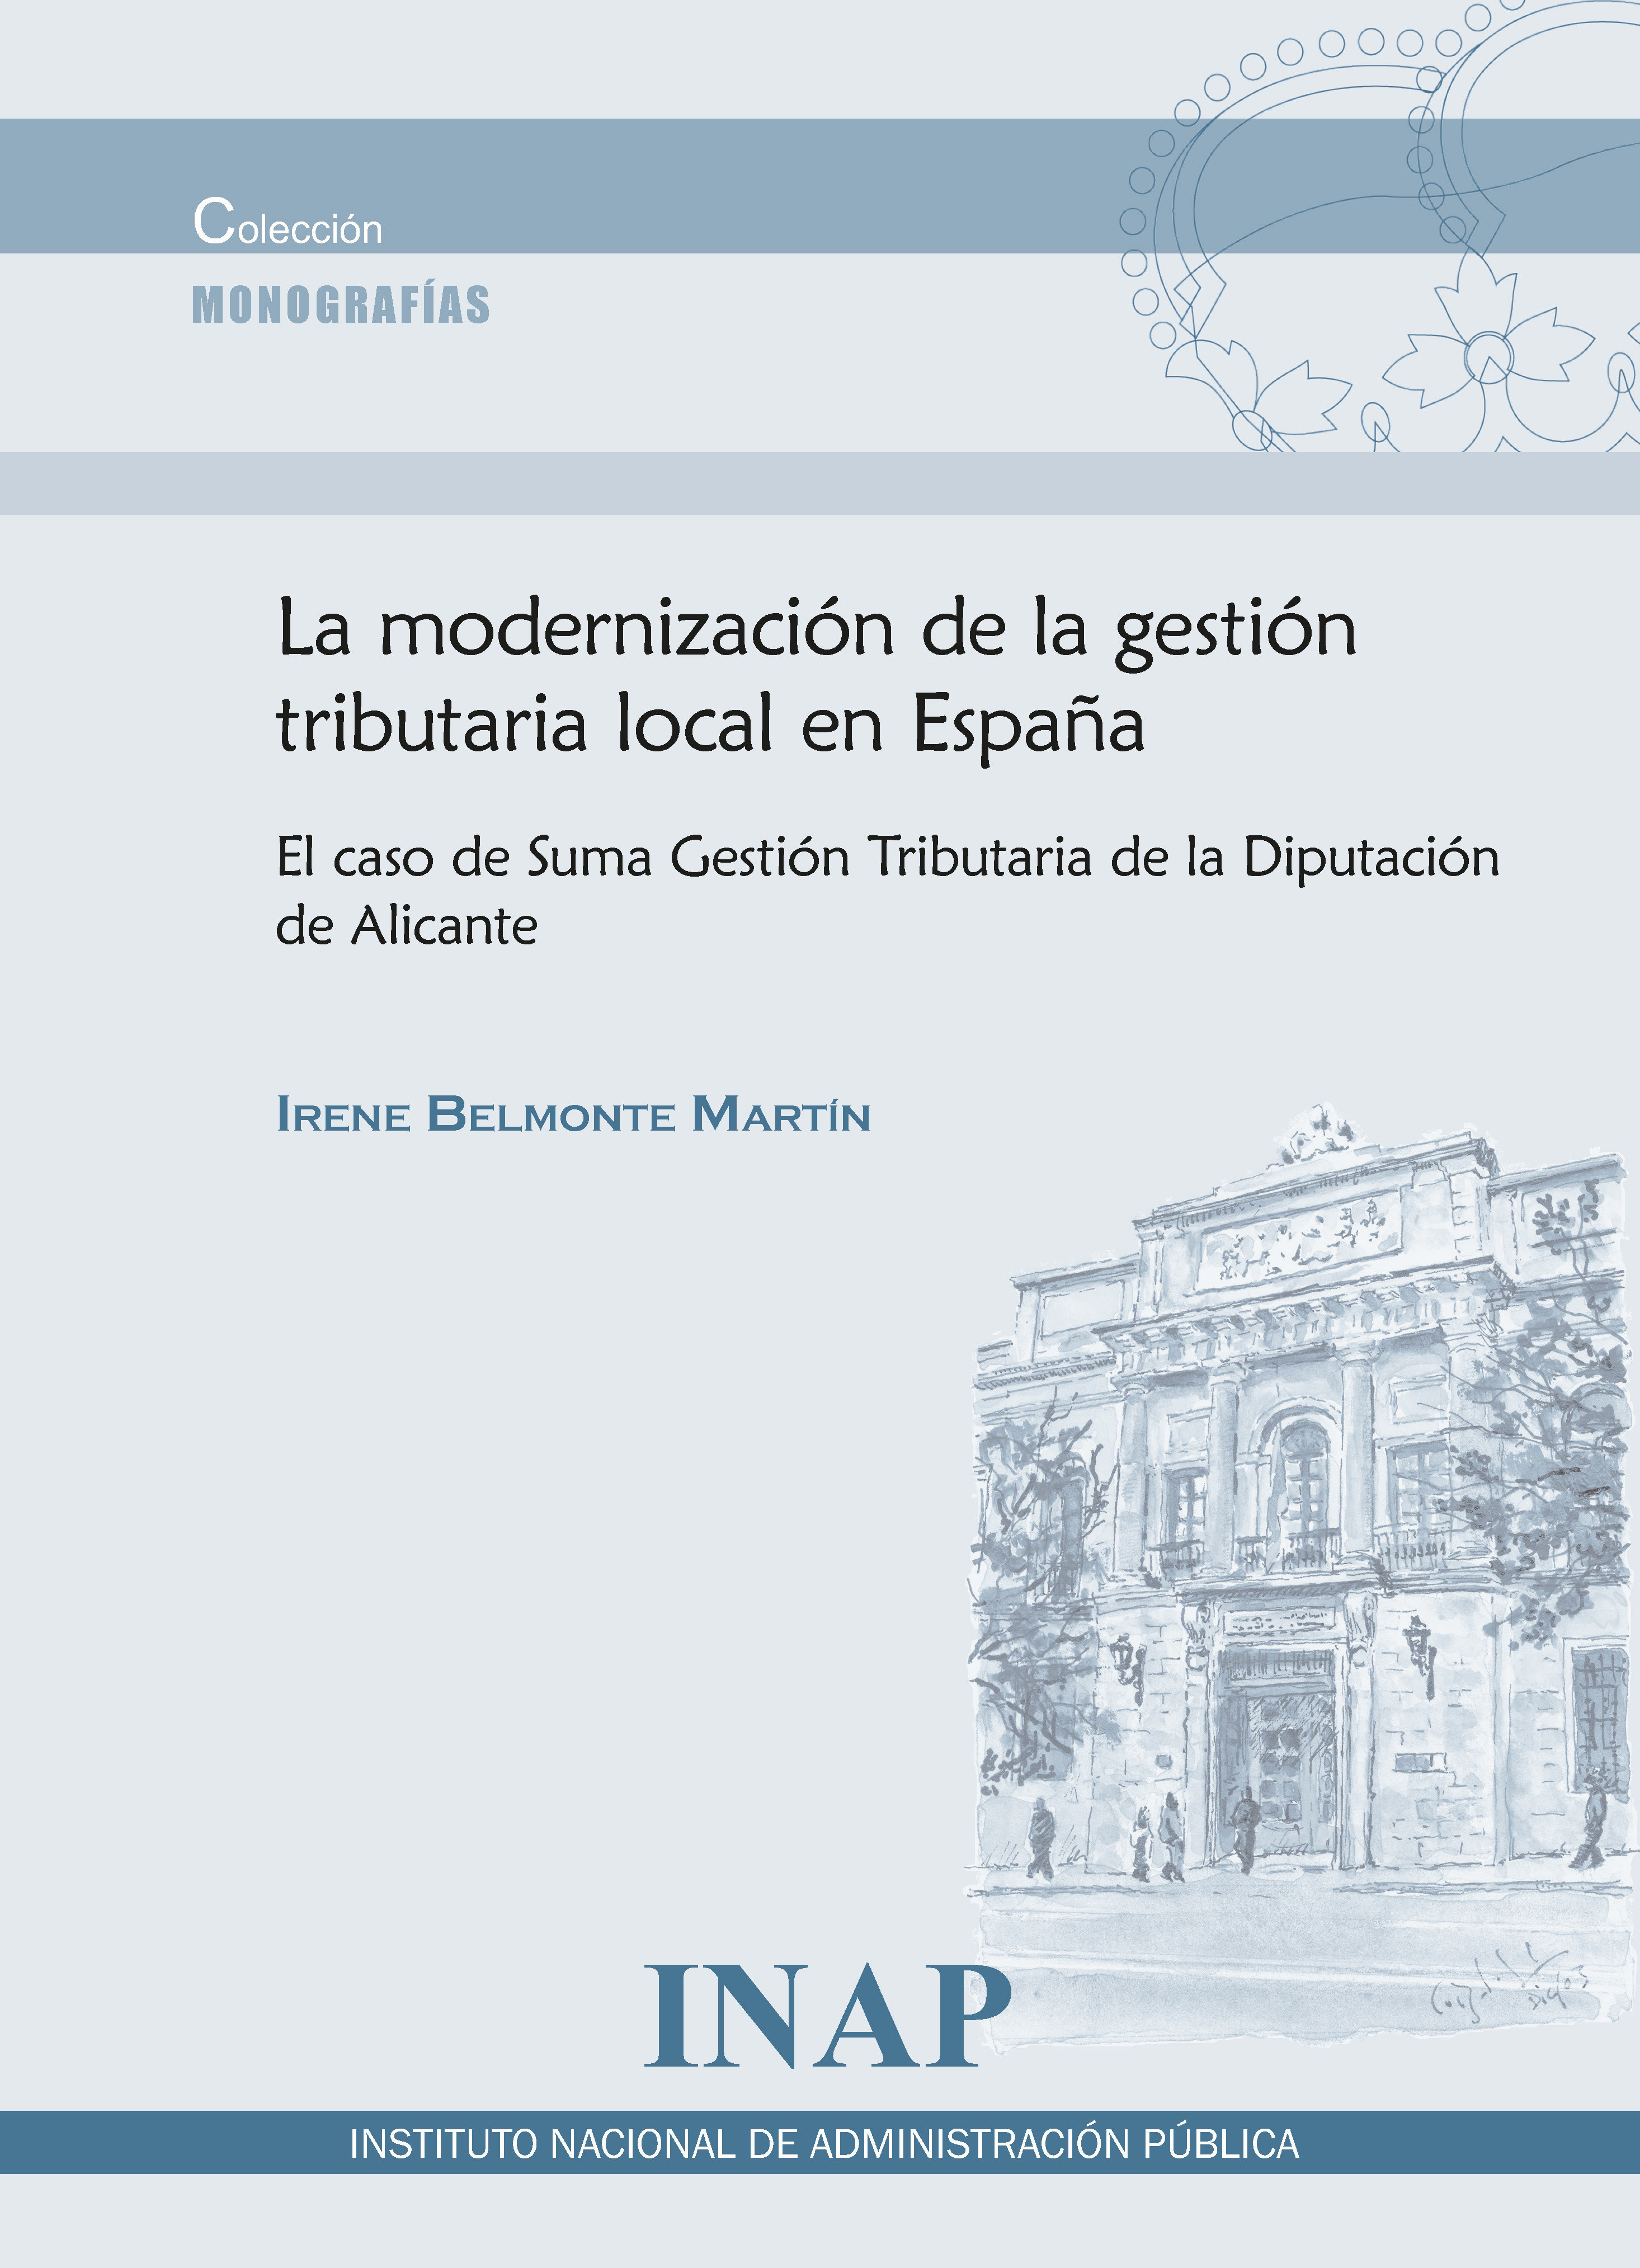 La modernización de la gestión tributaria local en España